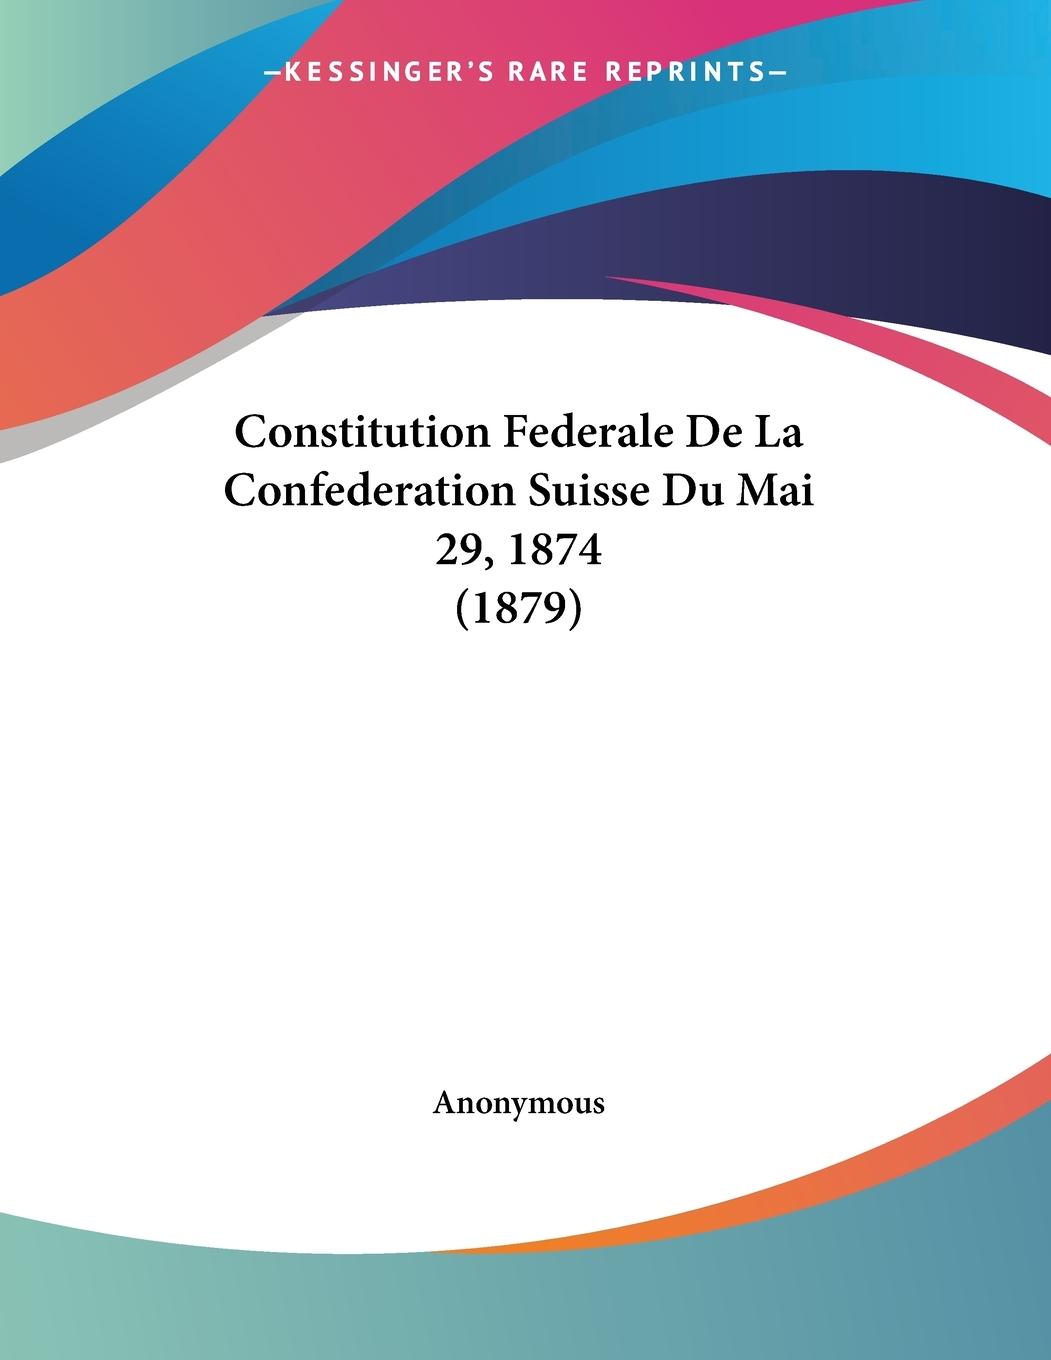 Constitution Federale De La Confederation Suisse Du Mai 29, 1874 (1879) - Anonymous